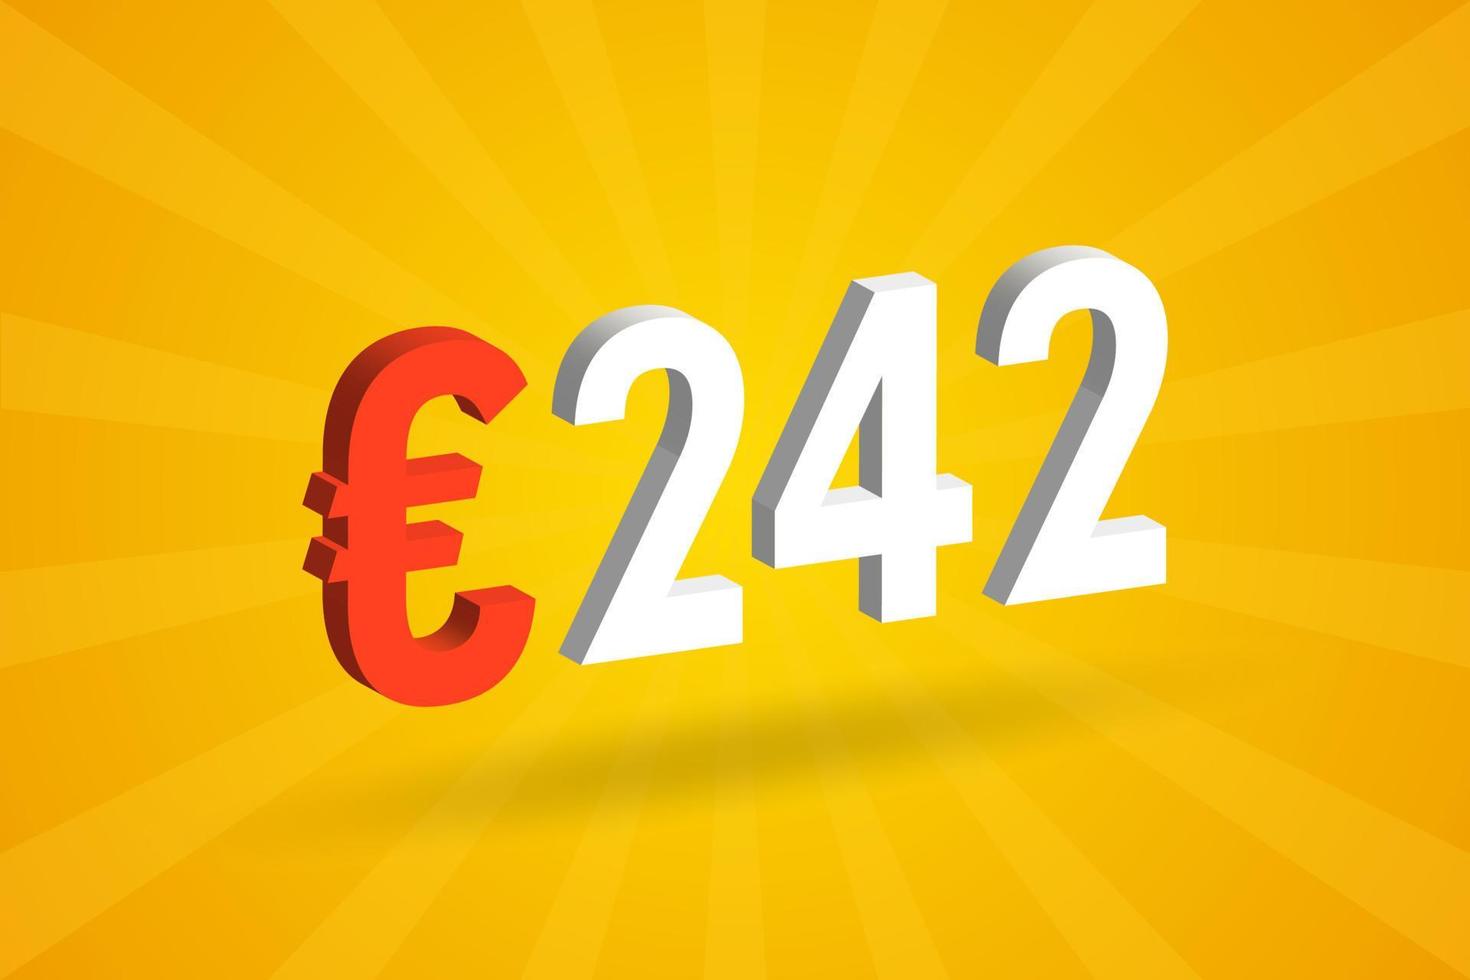 Symbole de texte vectoriel 3d de devise de 242 euros. 3d 242 euro union européenne argent vecteur de stock